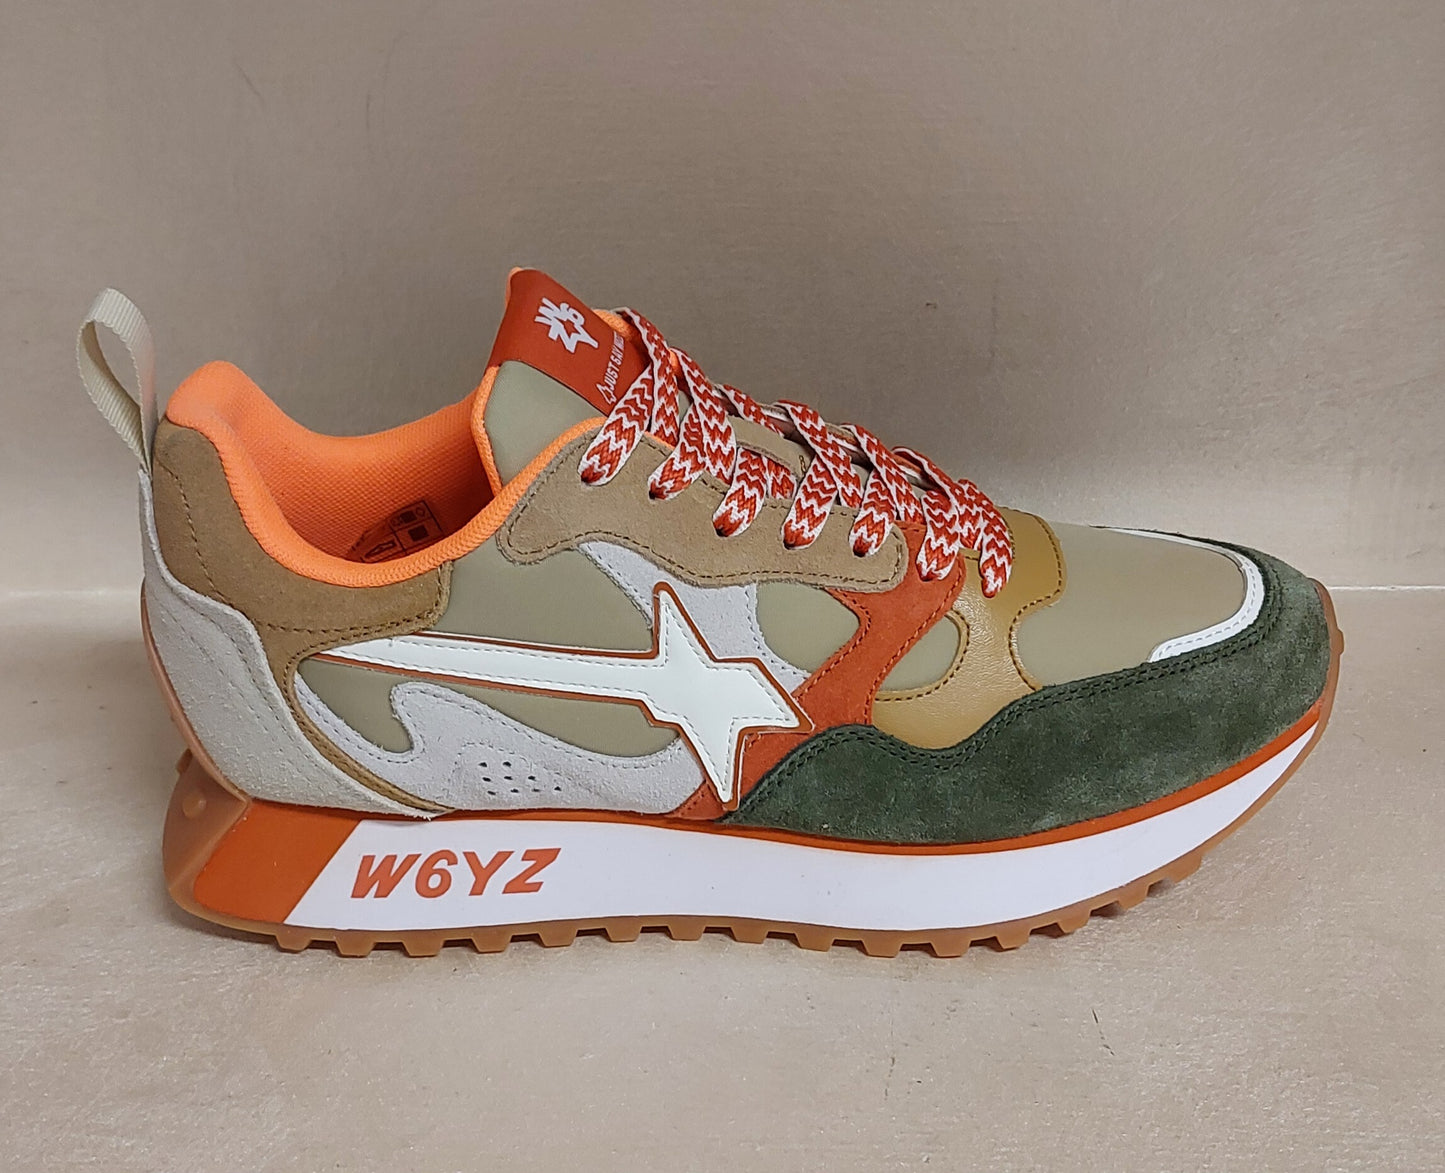 Wizz sneakers uomo verde arancio